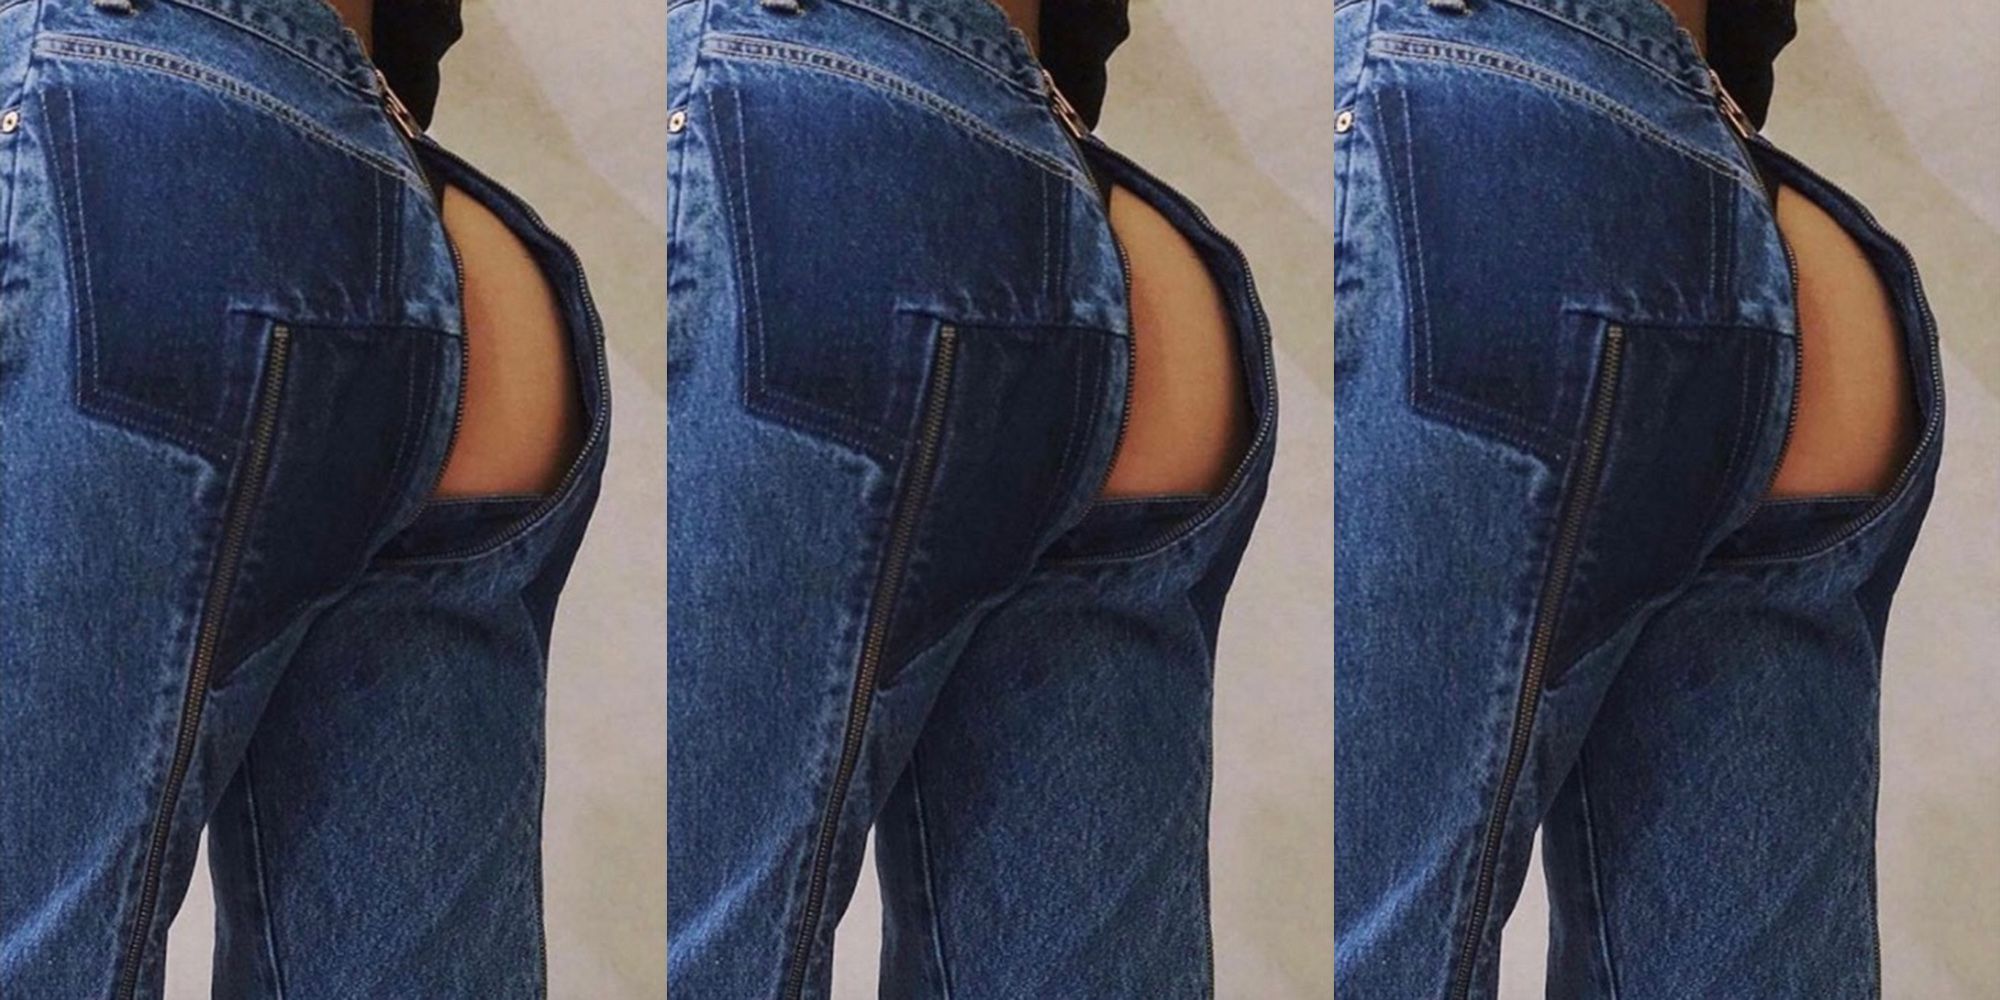 Если порвались джинсы то Вас обязательно трахнут в попку